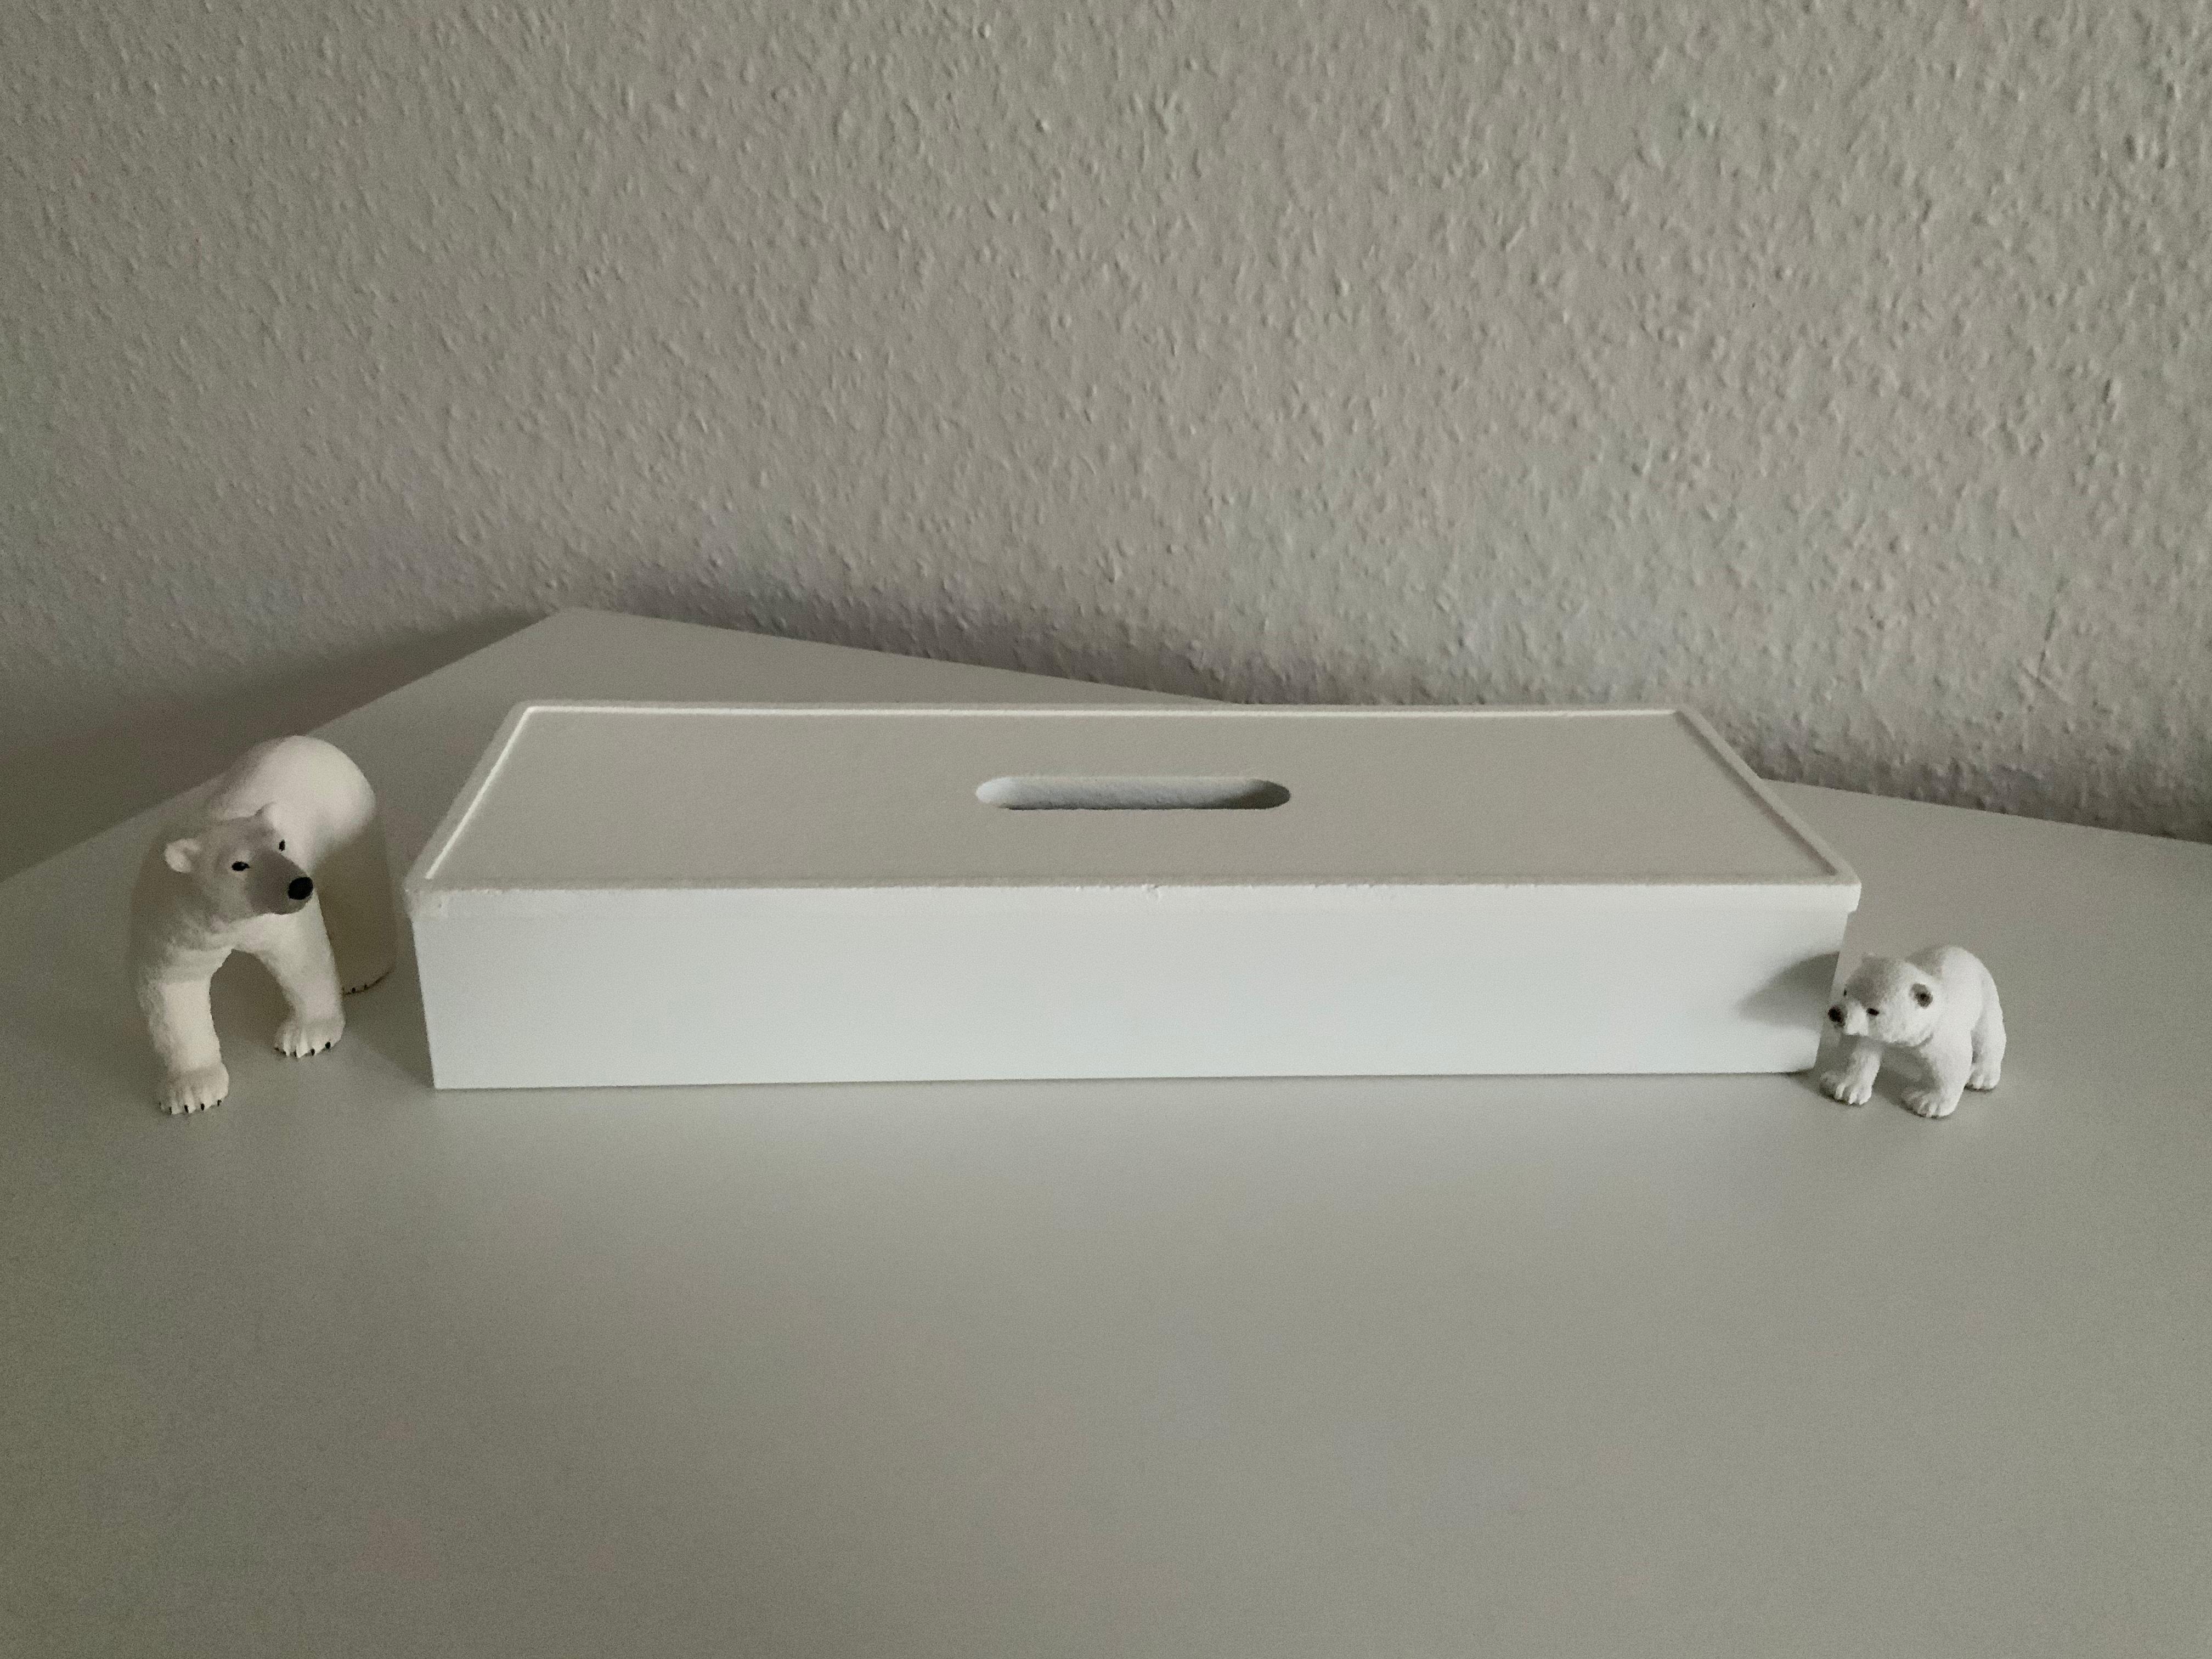 Upcycling IKEAbox, 
Korkdeckel der Stiftebox weiß gespritzt